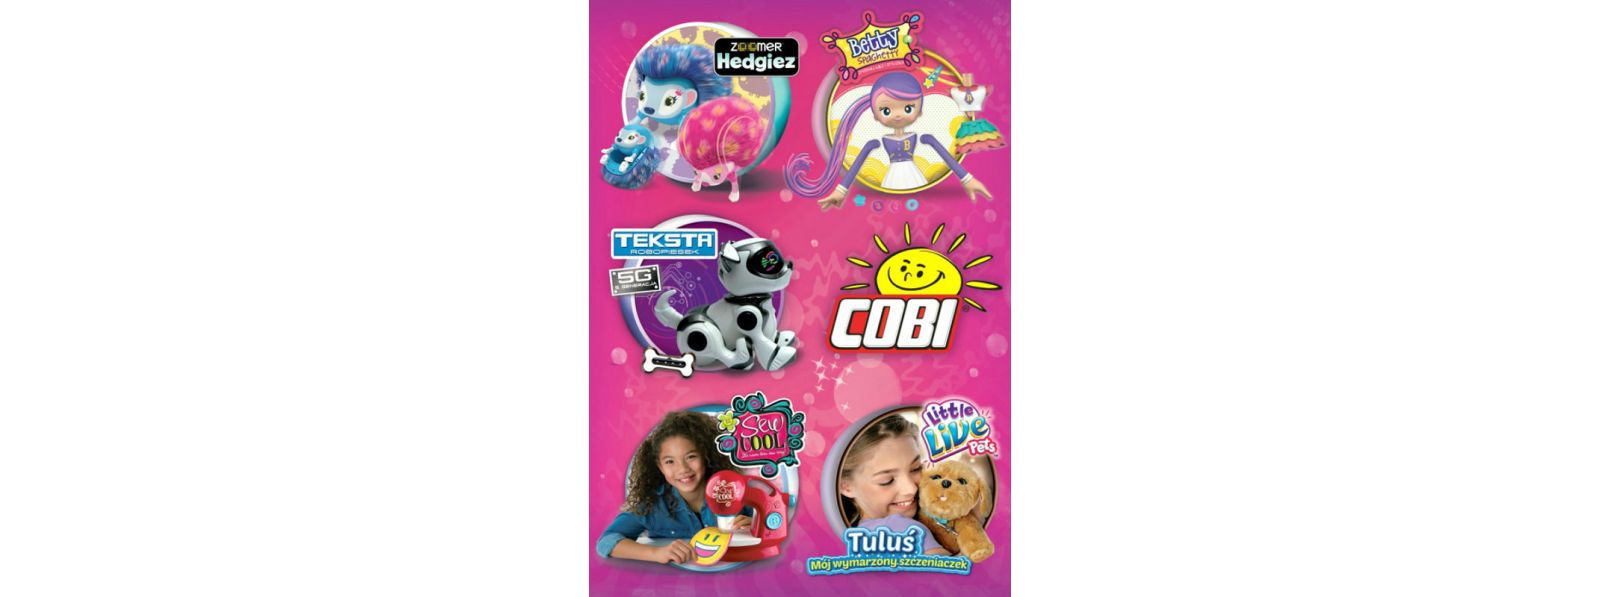 Katalog 2016 z zabawkami dla dziewczynek